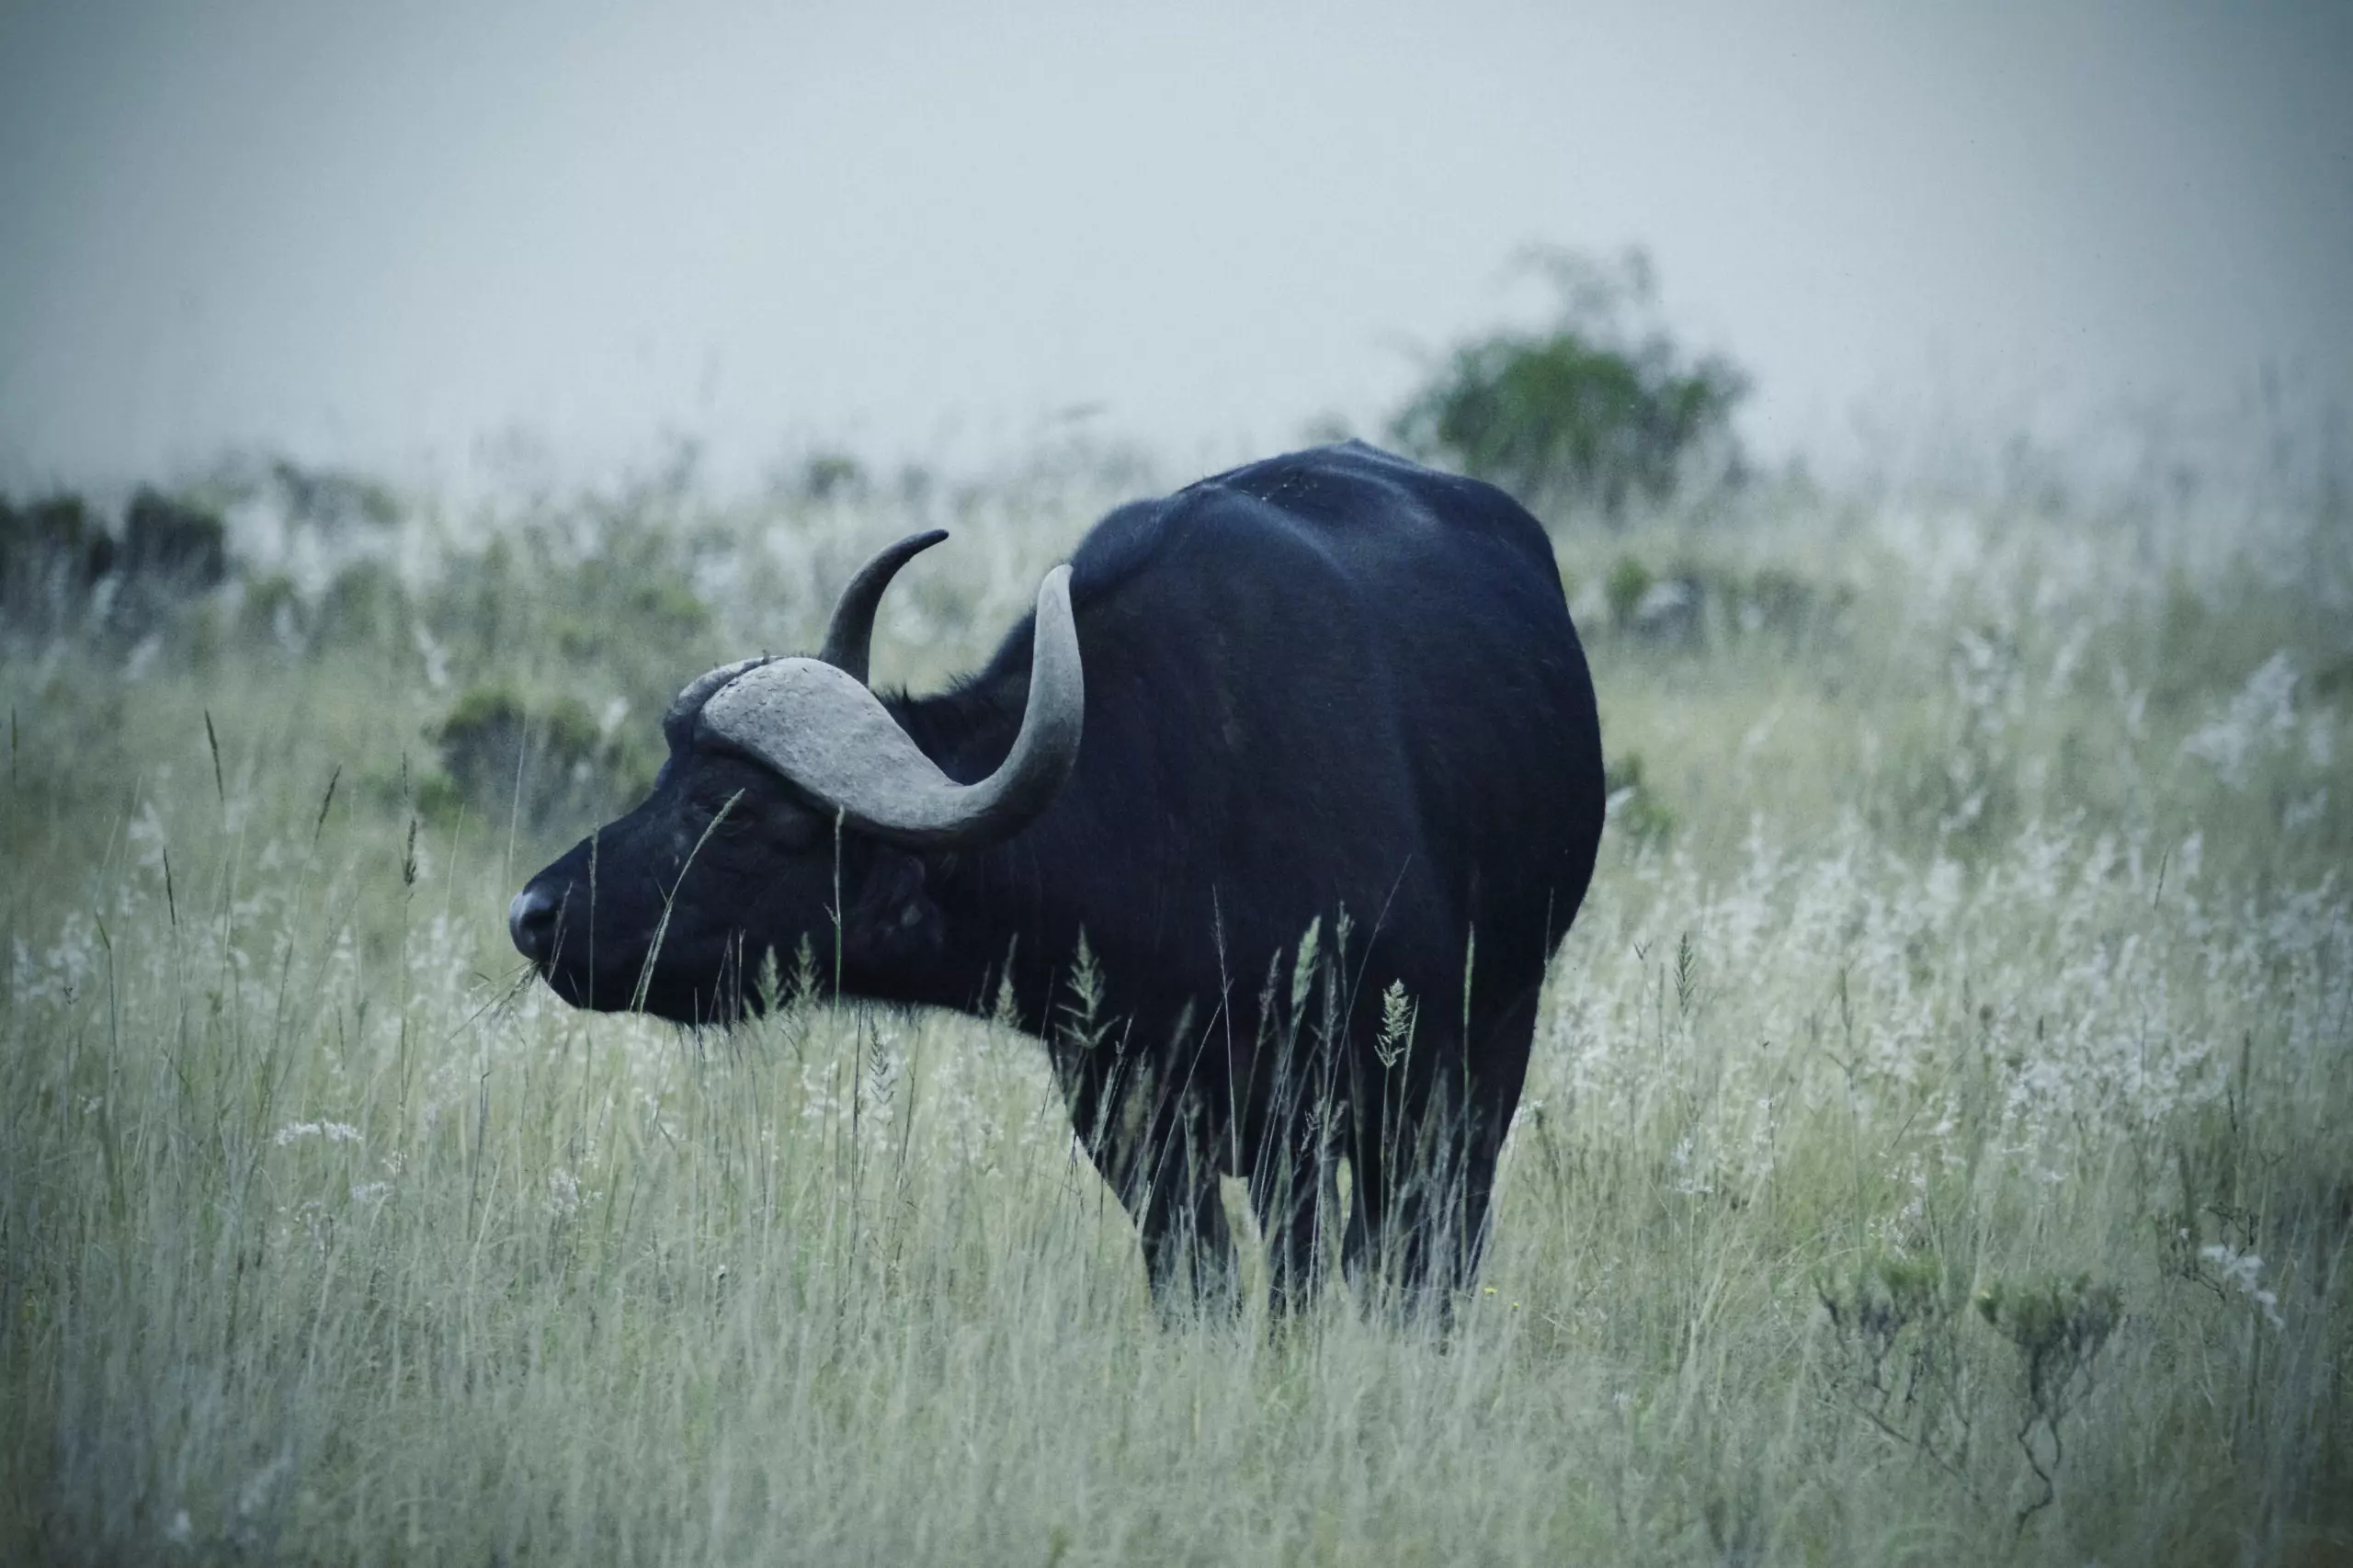 Wandbild (3426) Büffel 3 präsentiert: Tiere,Aus Afrika